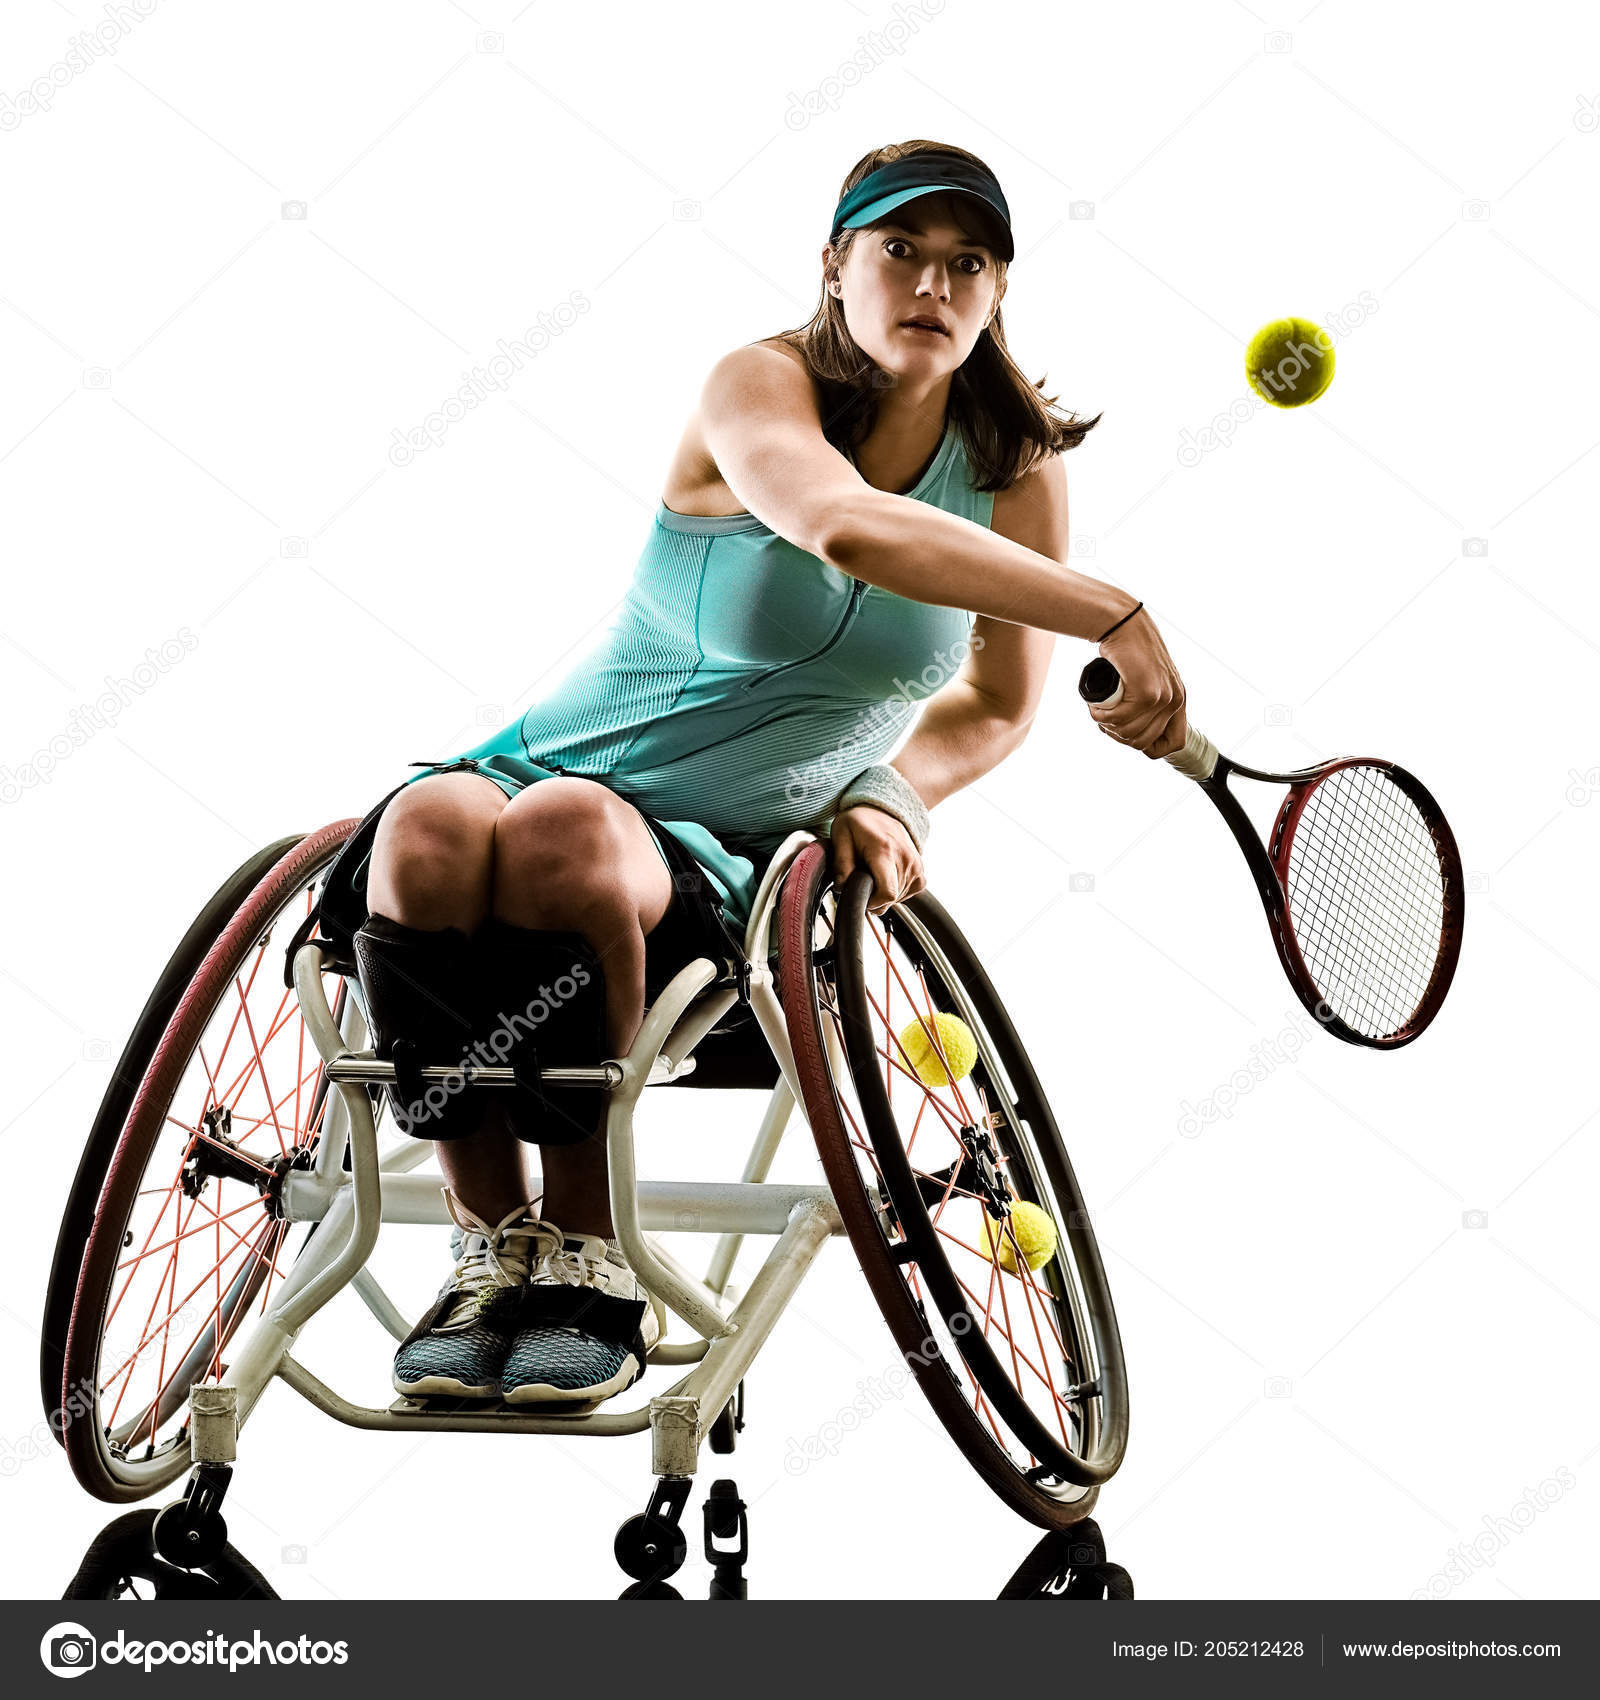 Результат пошуку зображень за запитом "теннис для людей с инвалидностью"